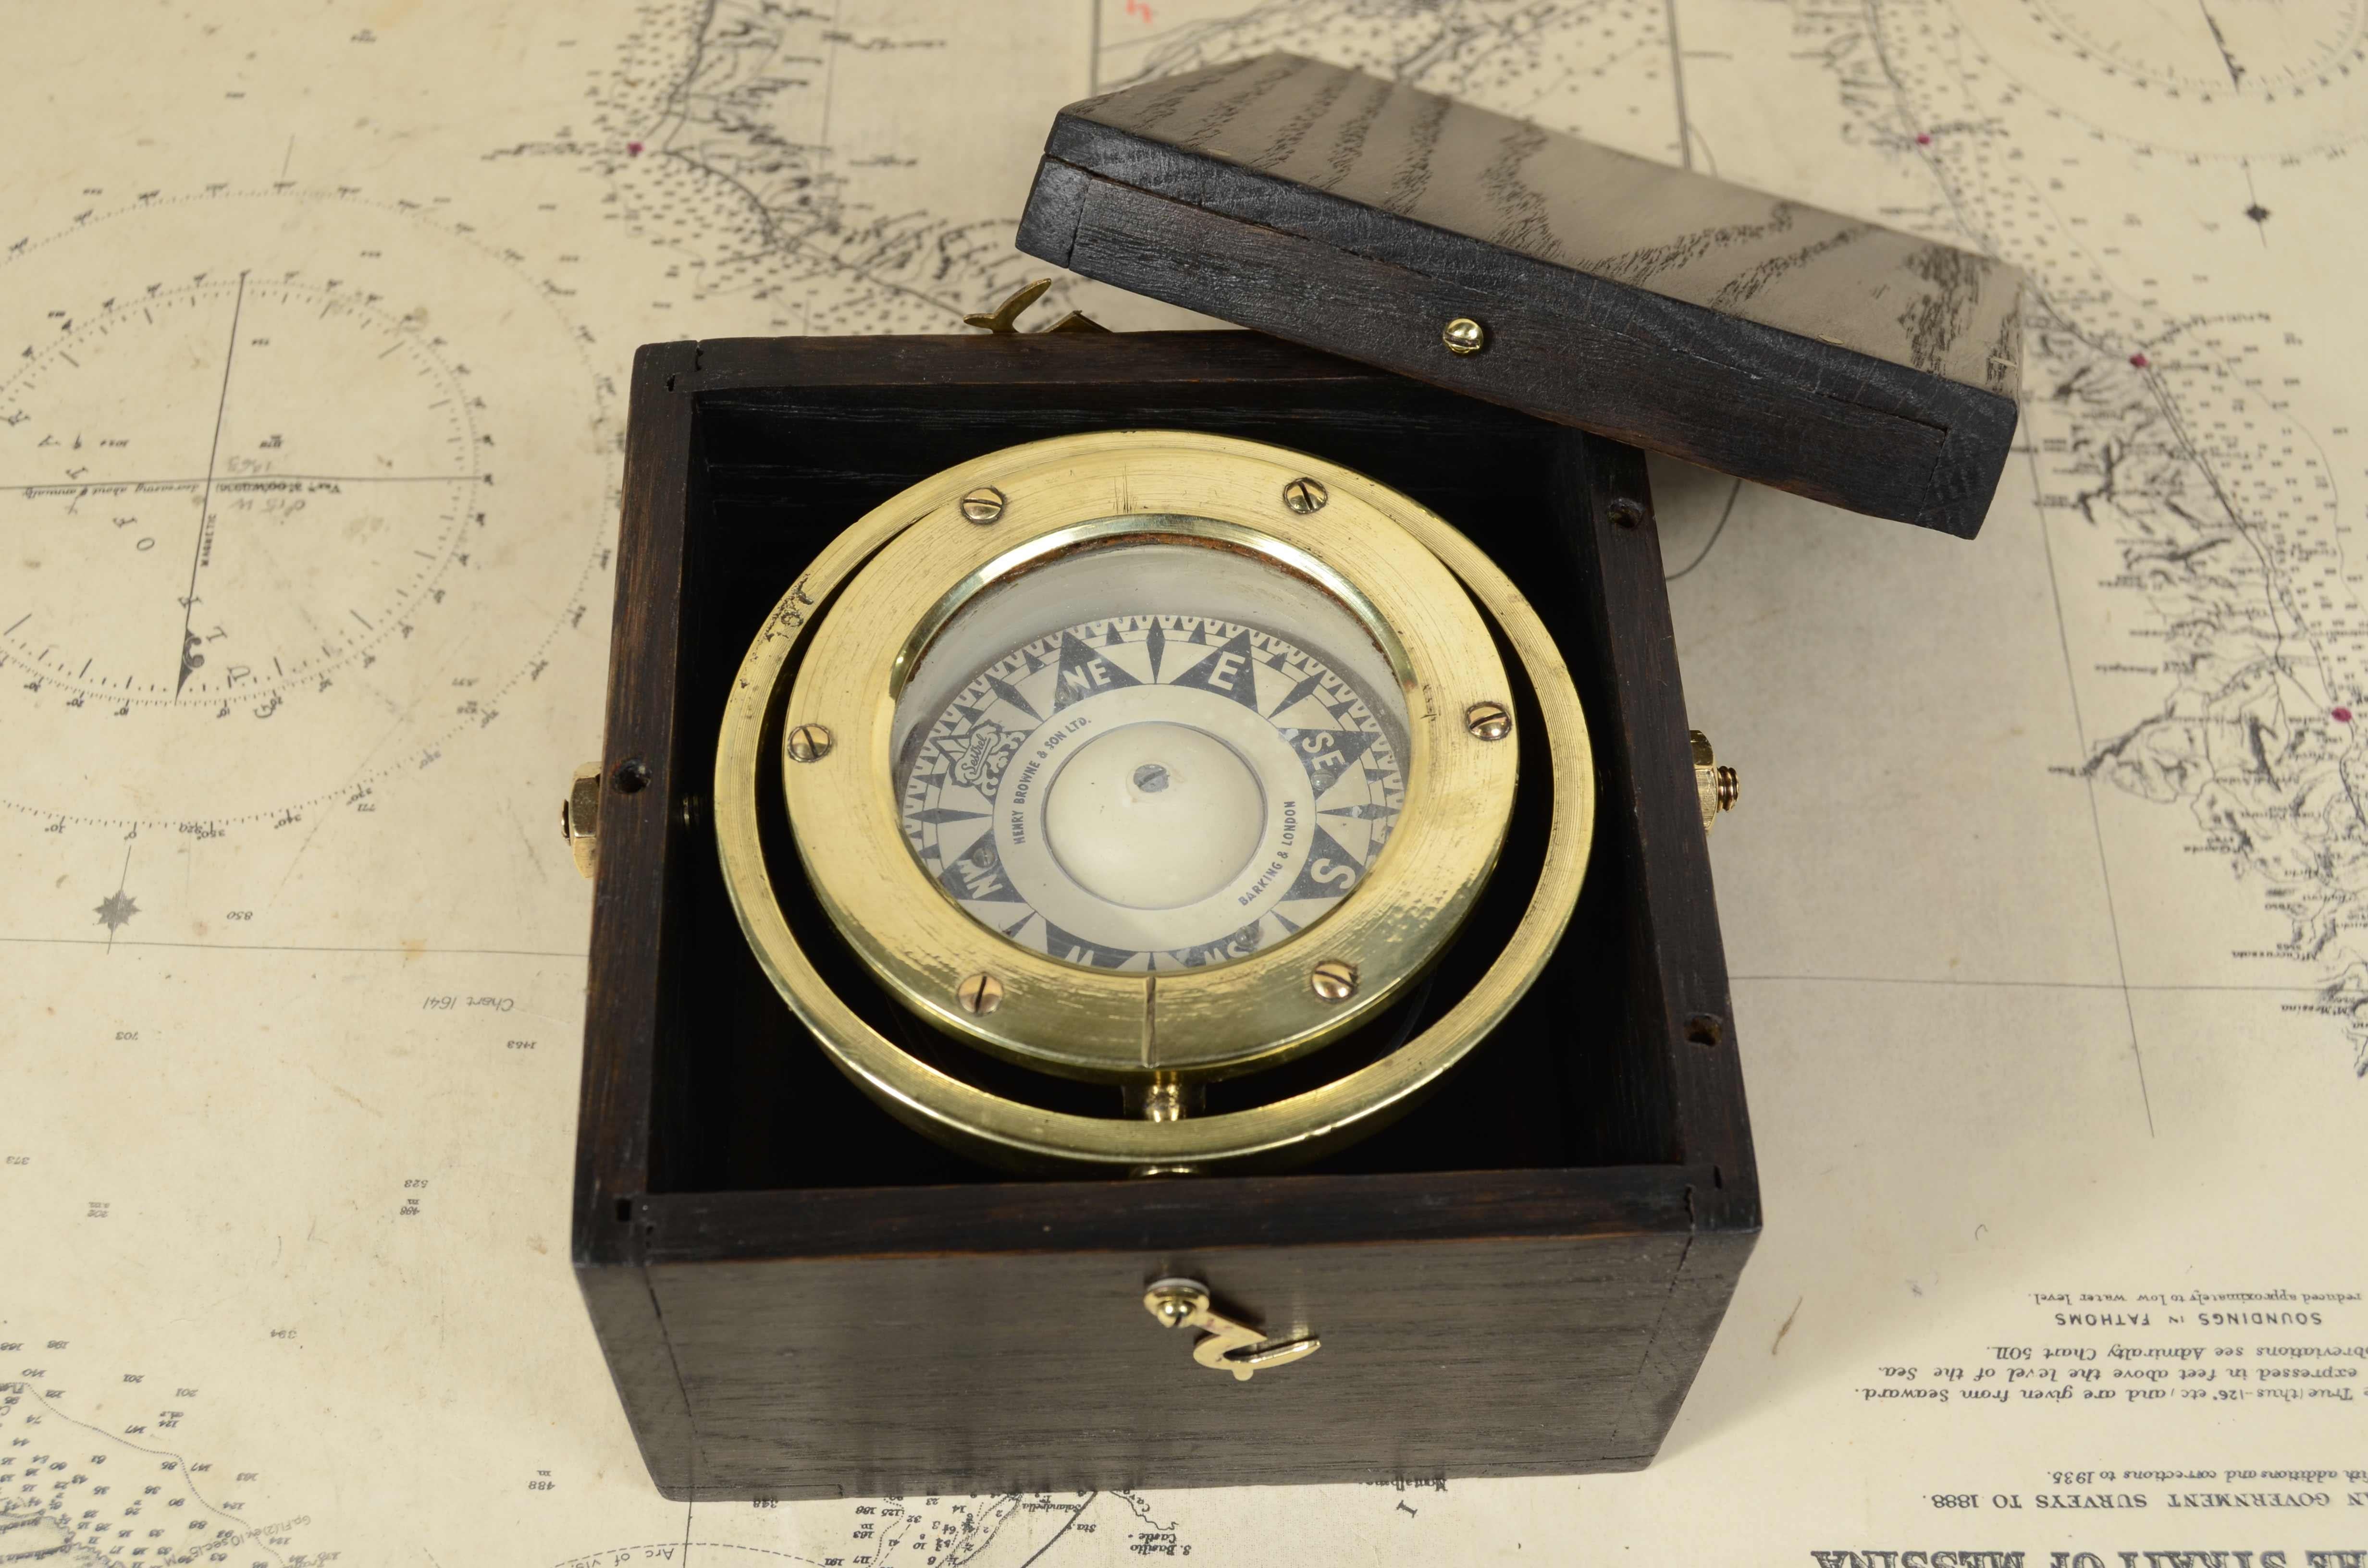 Nautischer Magnetkompass, signiert Henry Browne & Son Ltd Barking & London  Sestrel Mark aus der zweiten Hälfte des 19. Jahrhunderts. 
Guter Zustand. Untergebracht in der originalen Holzkiste und montiert auf einem Kardangelenk.
Kartongröße cm